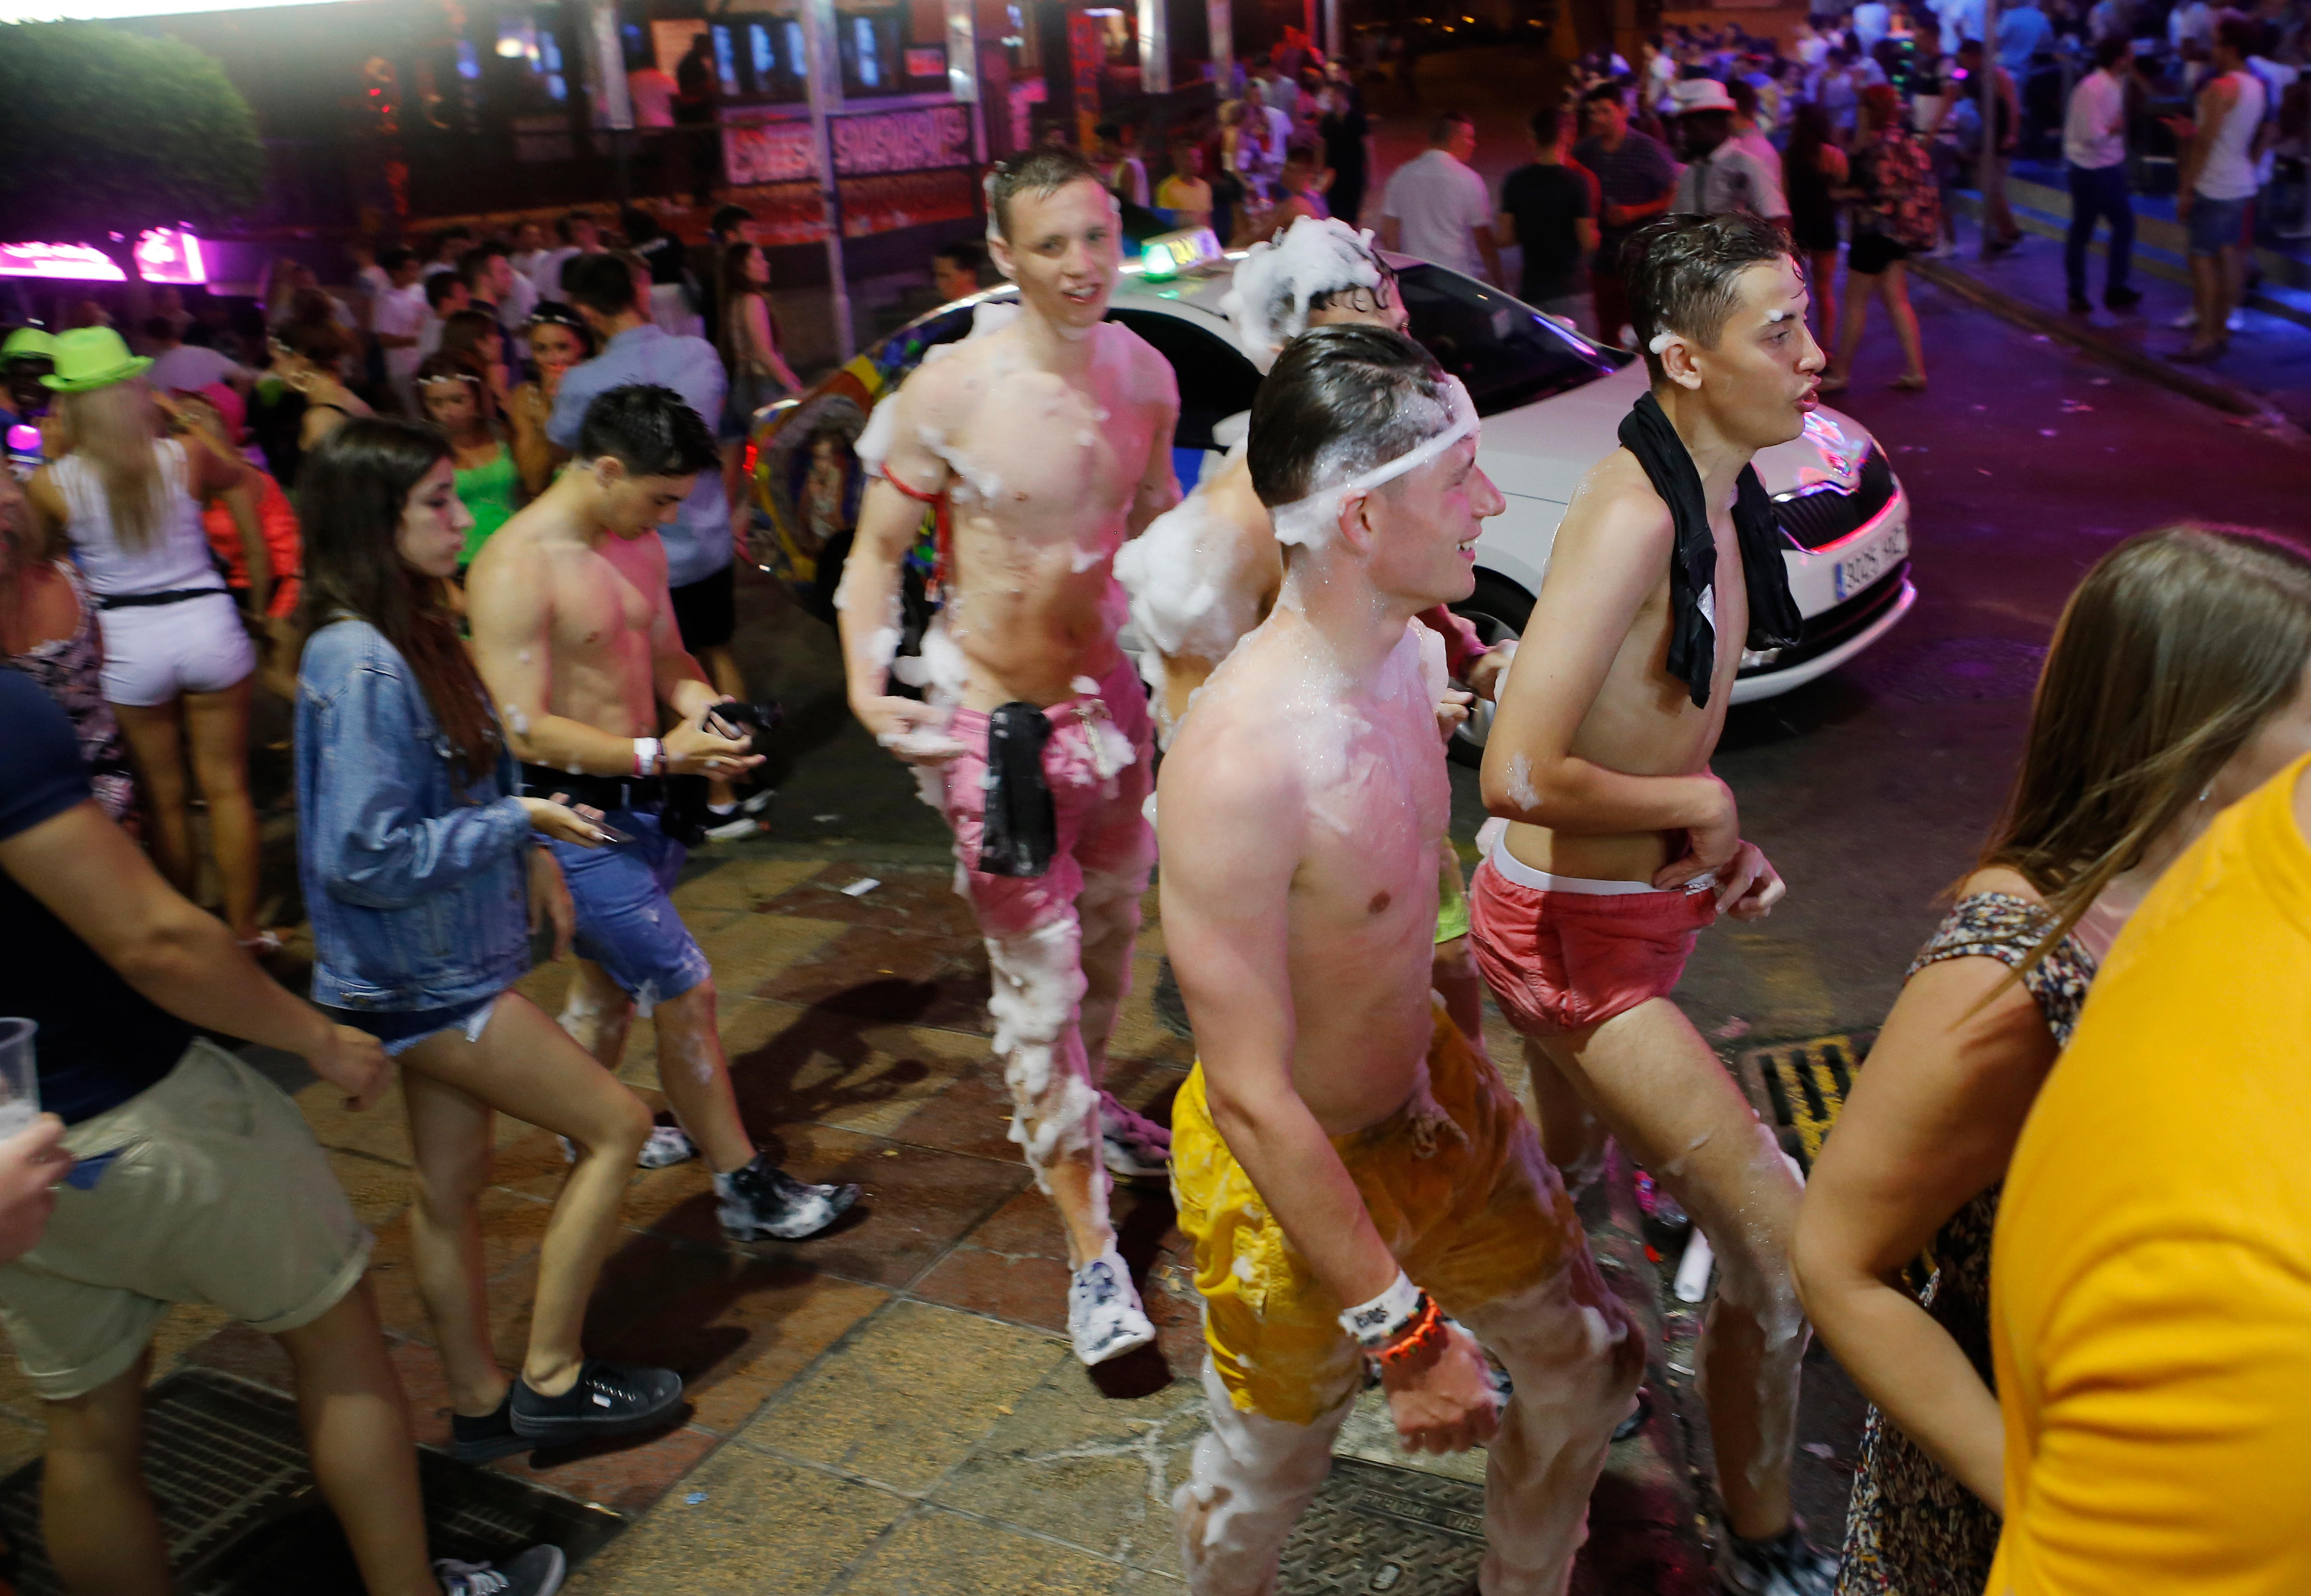 El alcalde de la ciudad del partido ha amenazado con tomar medidas enérgicas contra los turistas borrachos